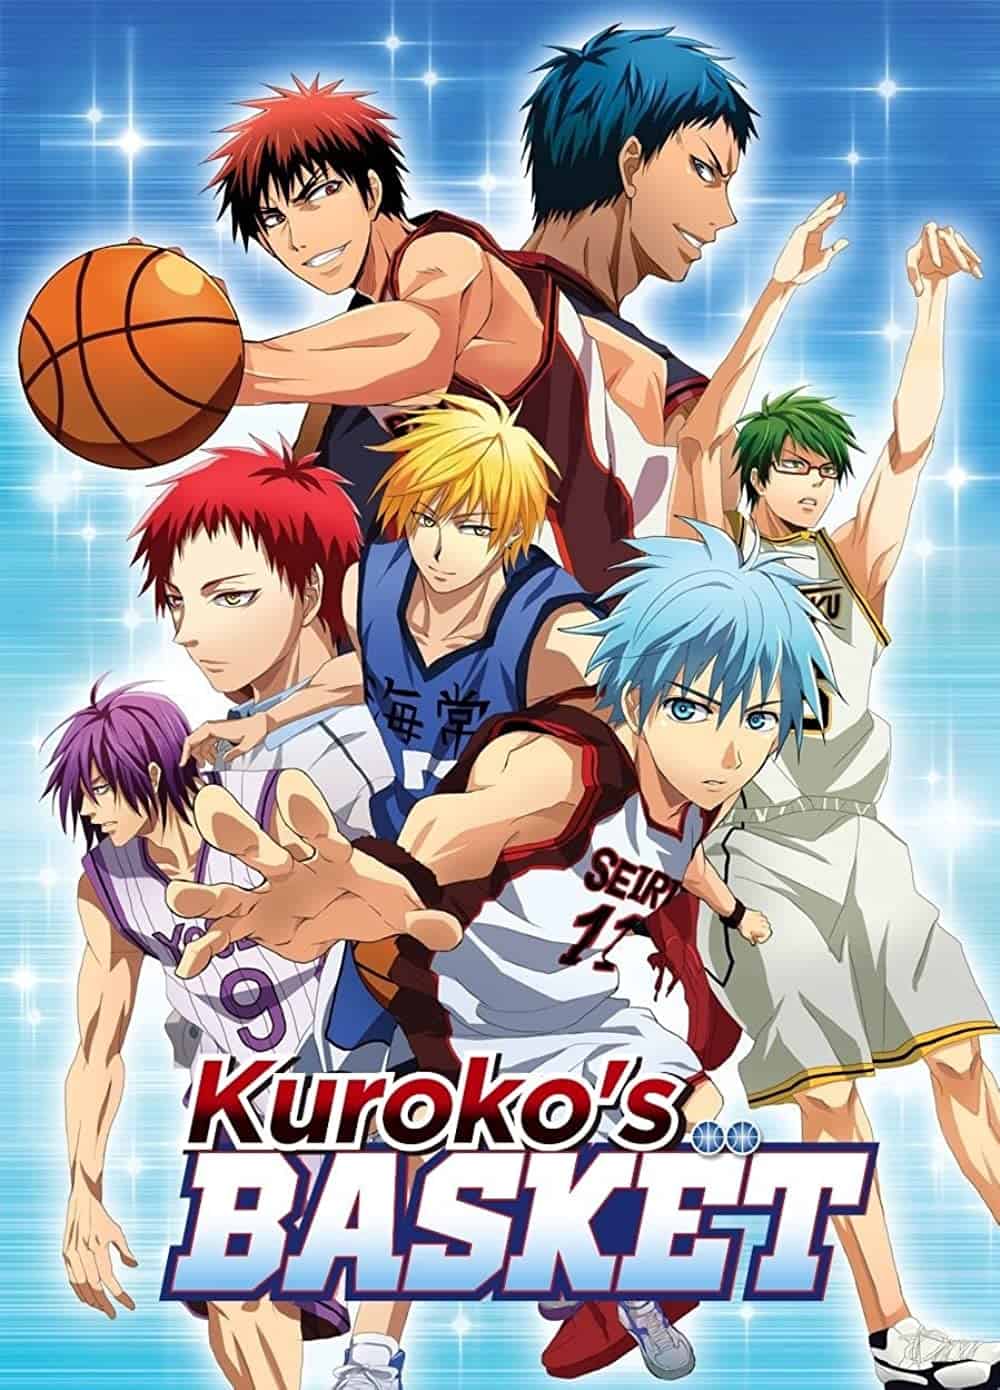 Kuroko’s Basketball hd poster